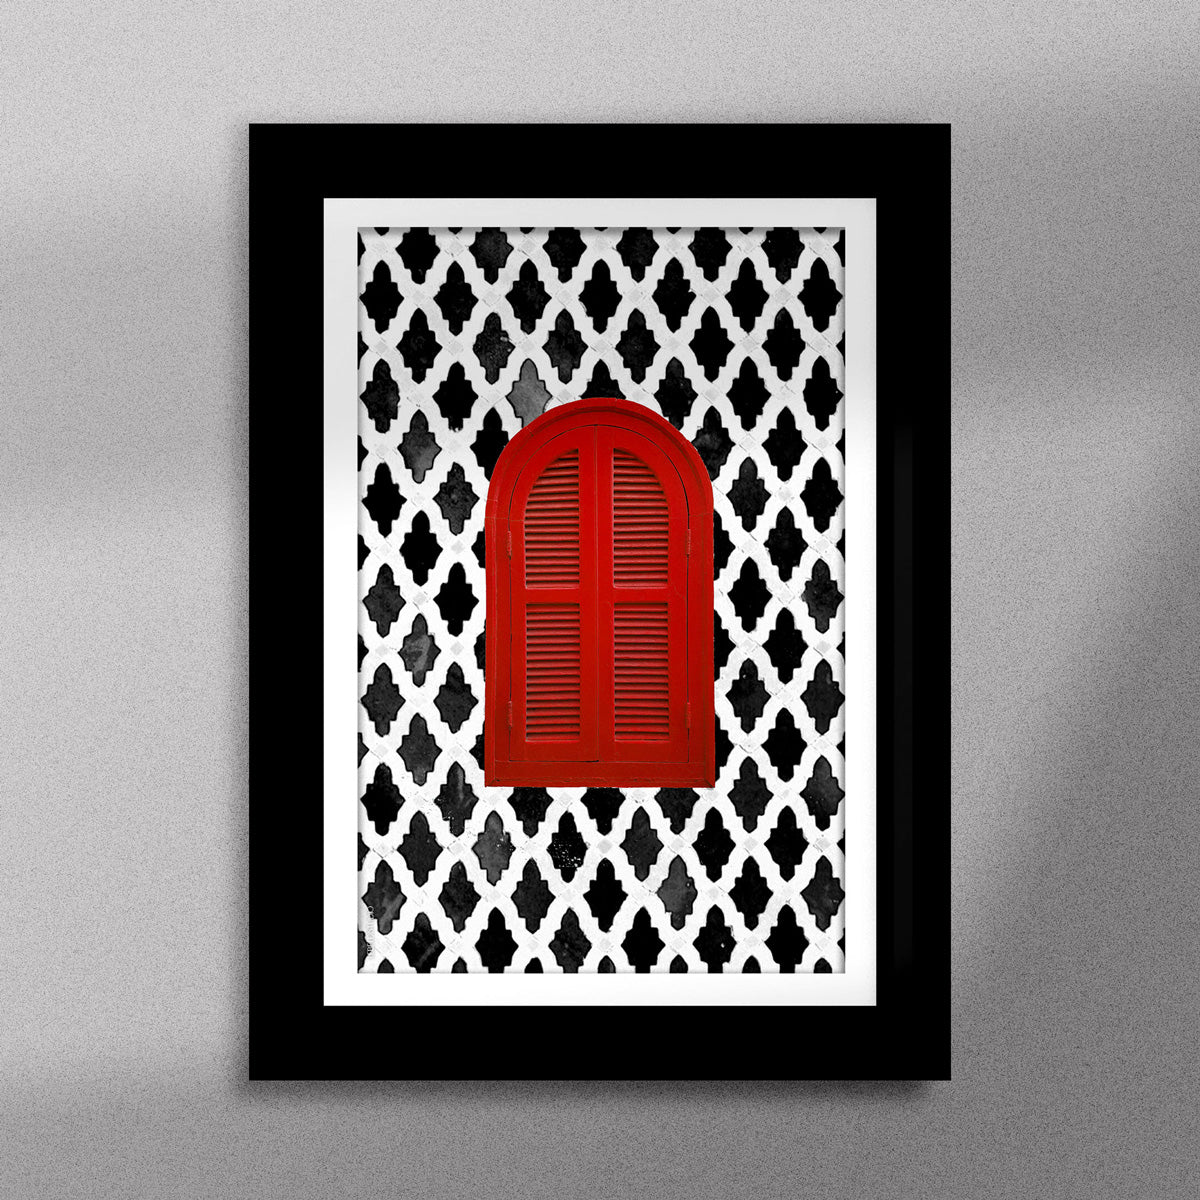 Tableau décoratif d'une fenêtre marocaine en rouge, sur un fond de zellige marocain en noir et blanc, encadré dans un cadre en noir - Format A5